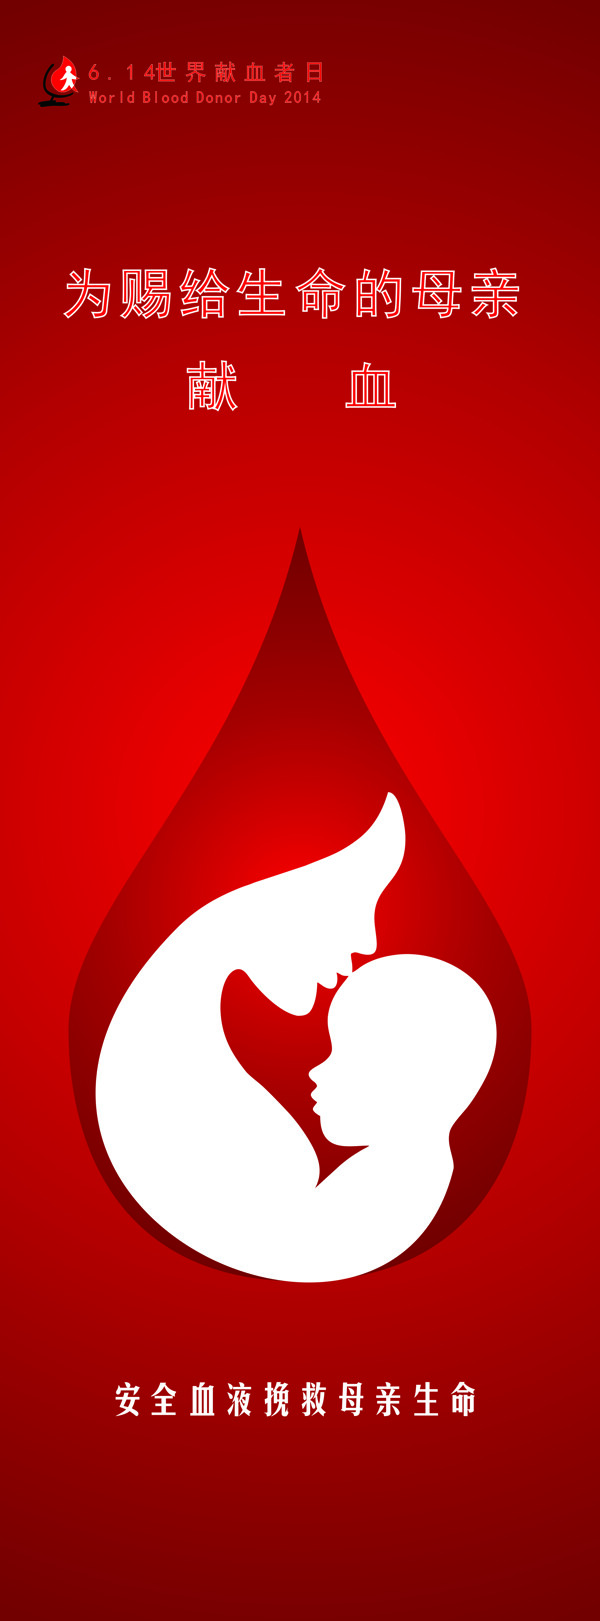 2014年6.14世界无偿献血者日宣传